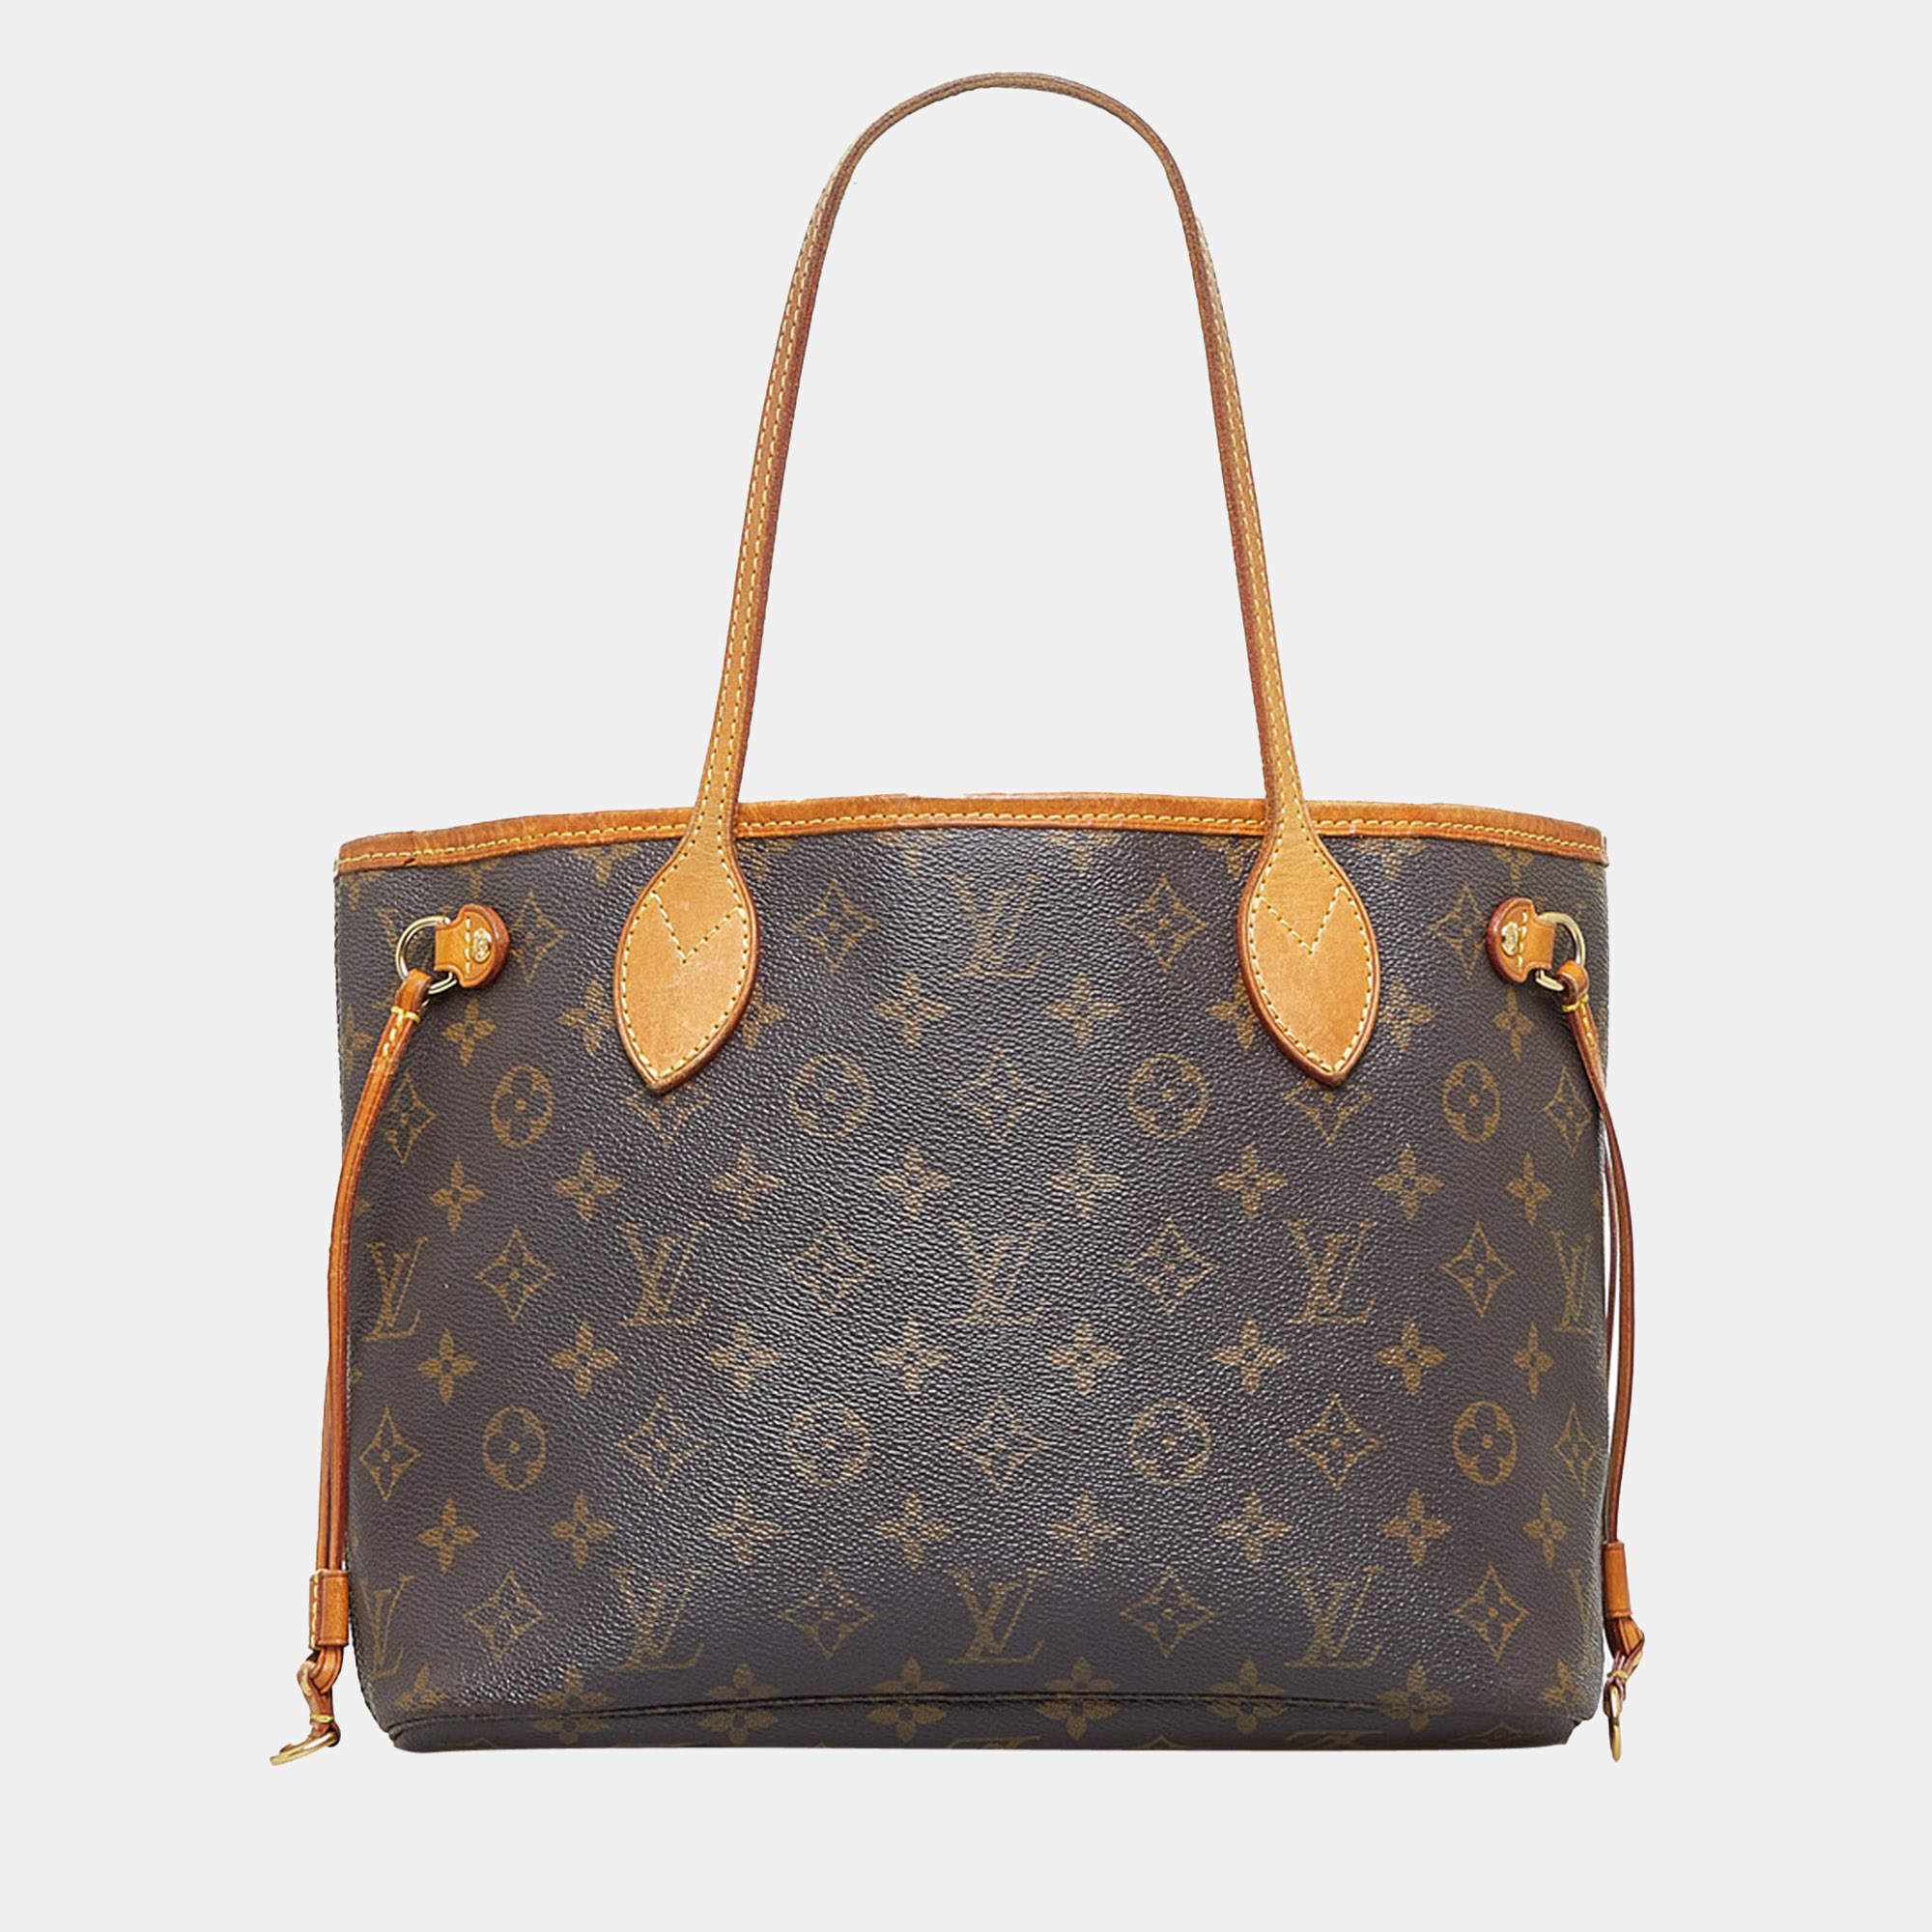 Louis Vuitton, Bags, Authentic Louis Vuitton Monogram Neverfull Pm